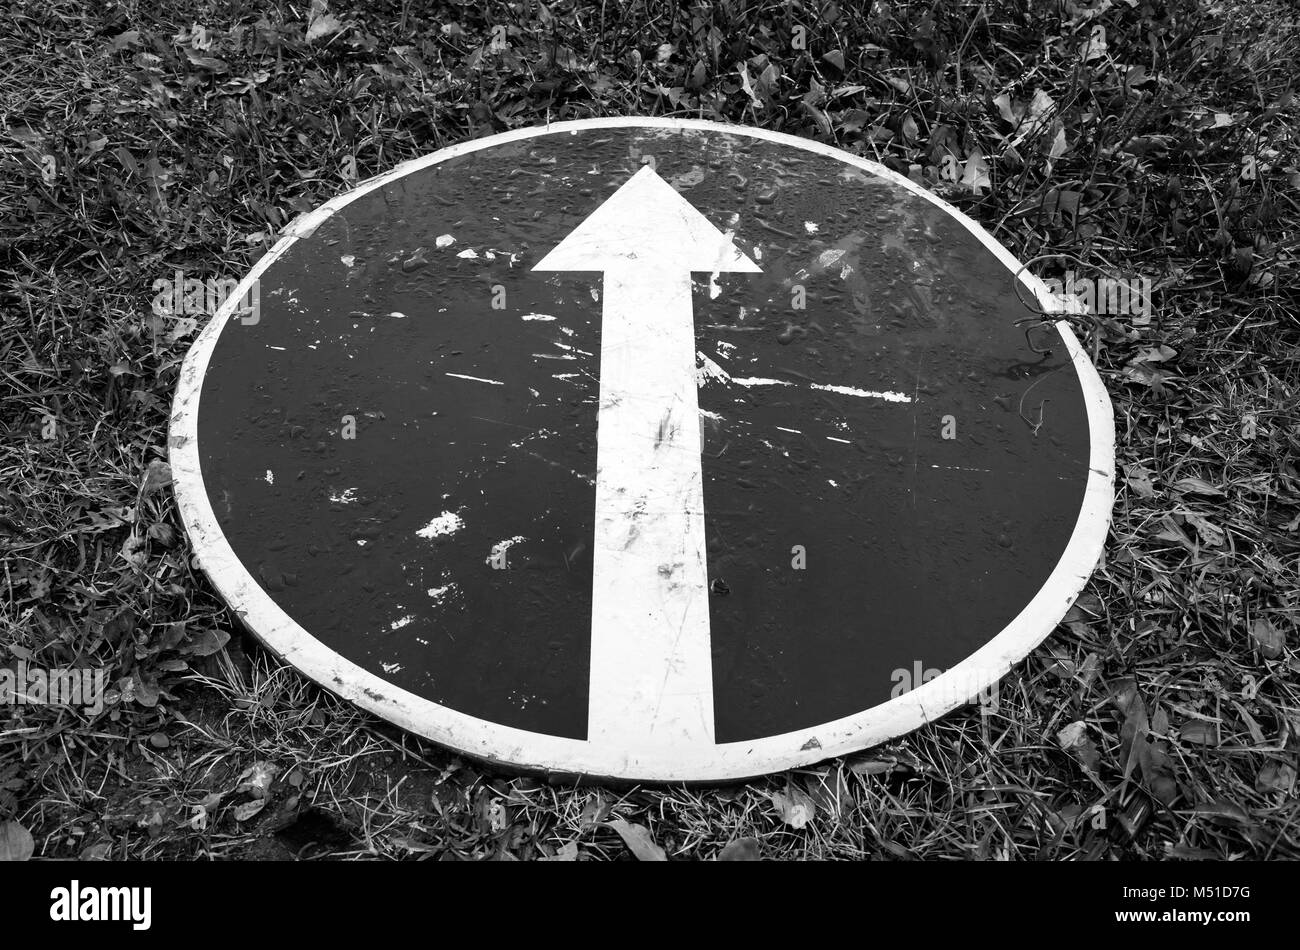 De l'avant uniquement, signe de route avec une flèche blanche se pose sur l'herbe. Photo en noir et blanc Banque D'Images